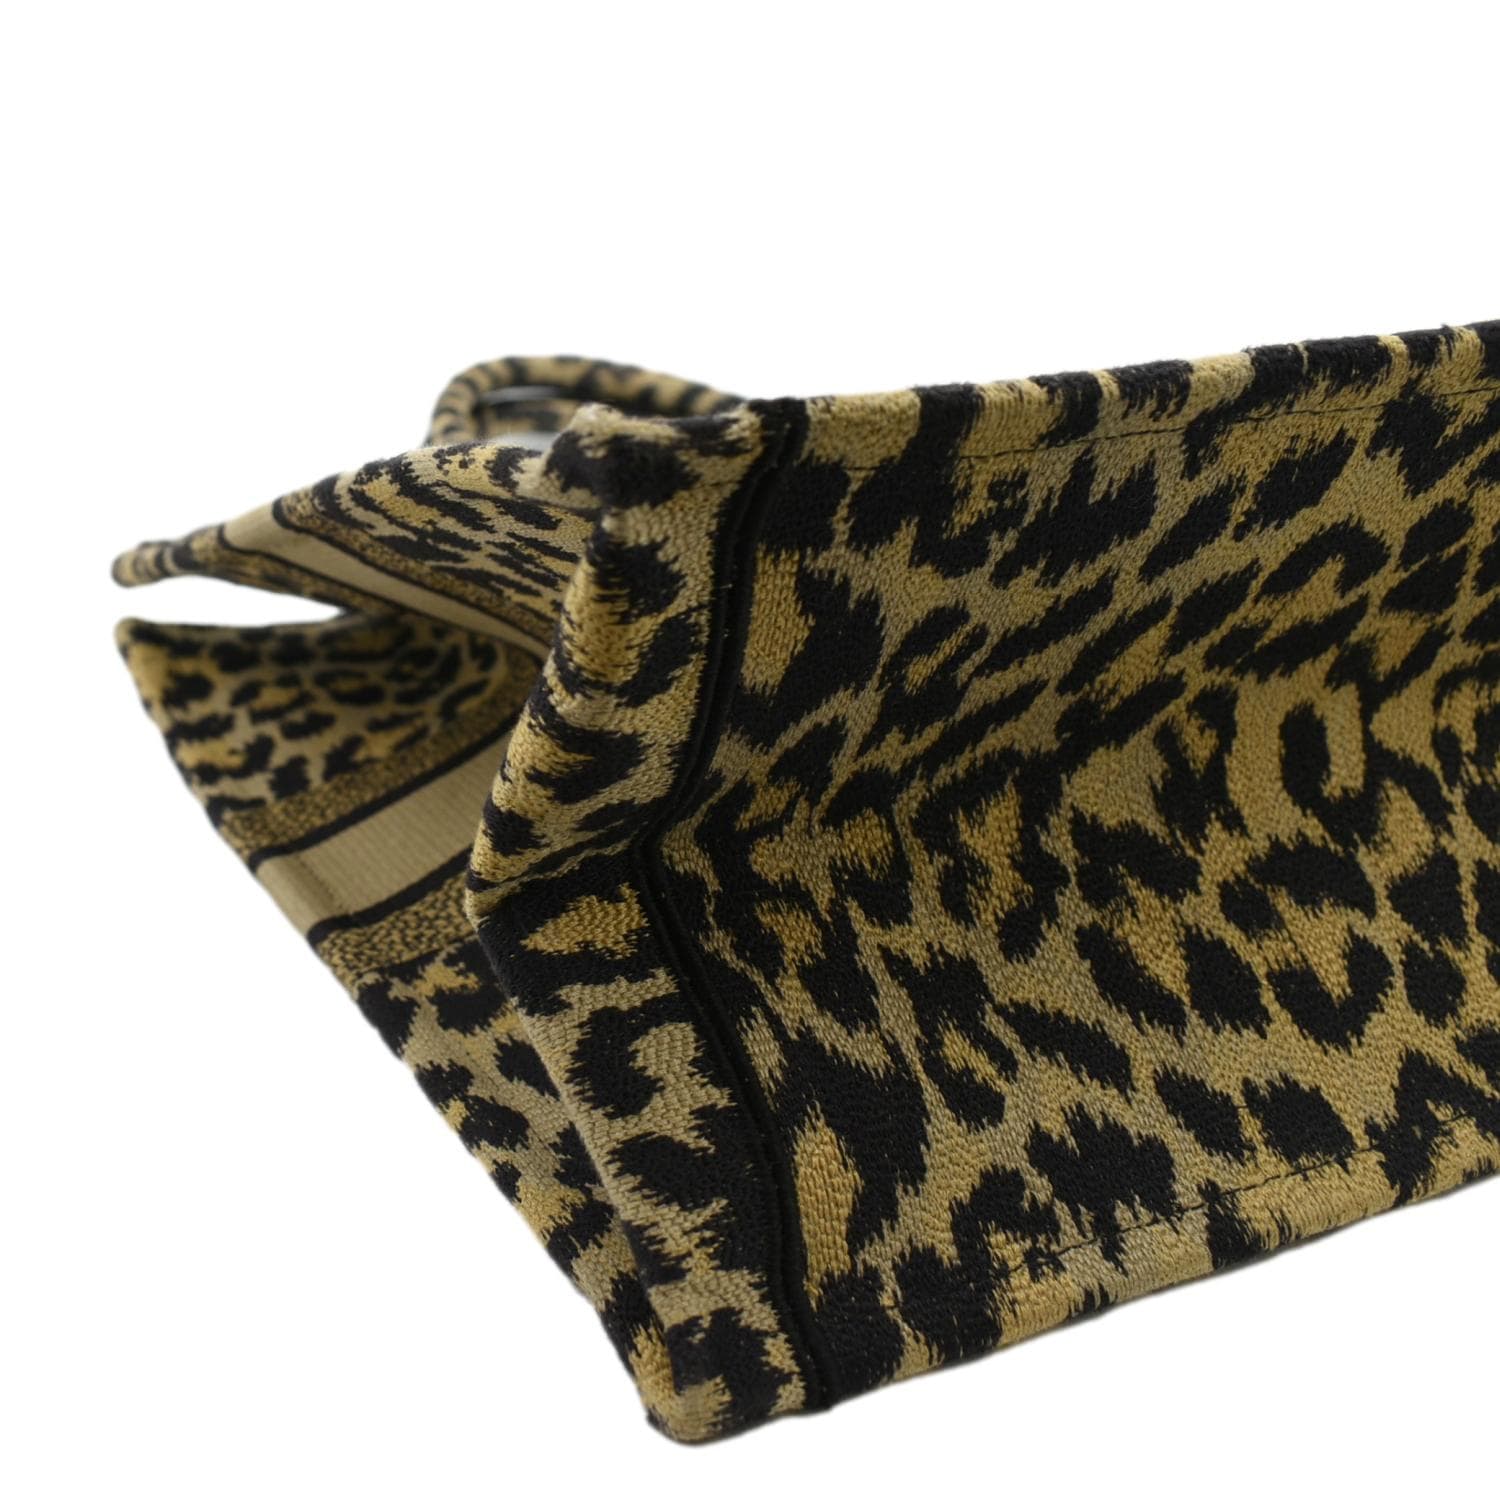 Christian Dior cheetah bag  Cheetah bag, Dior, Embroidered